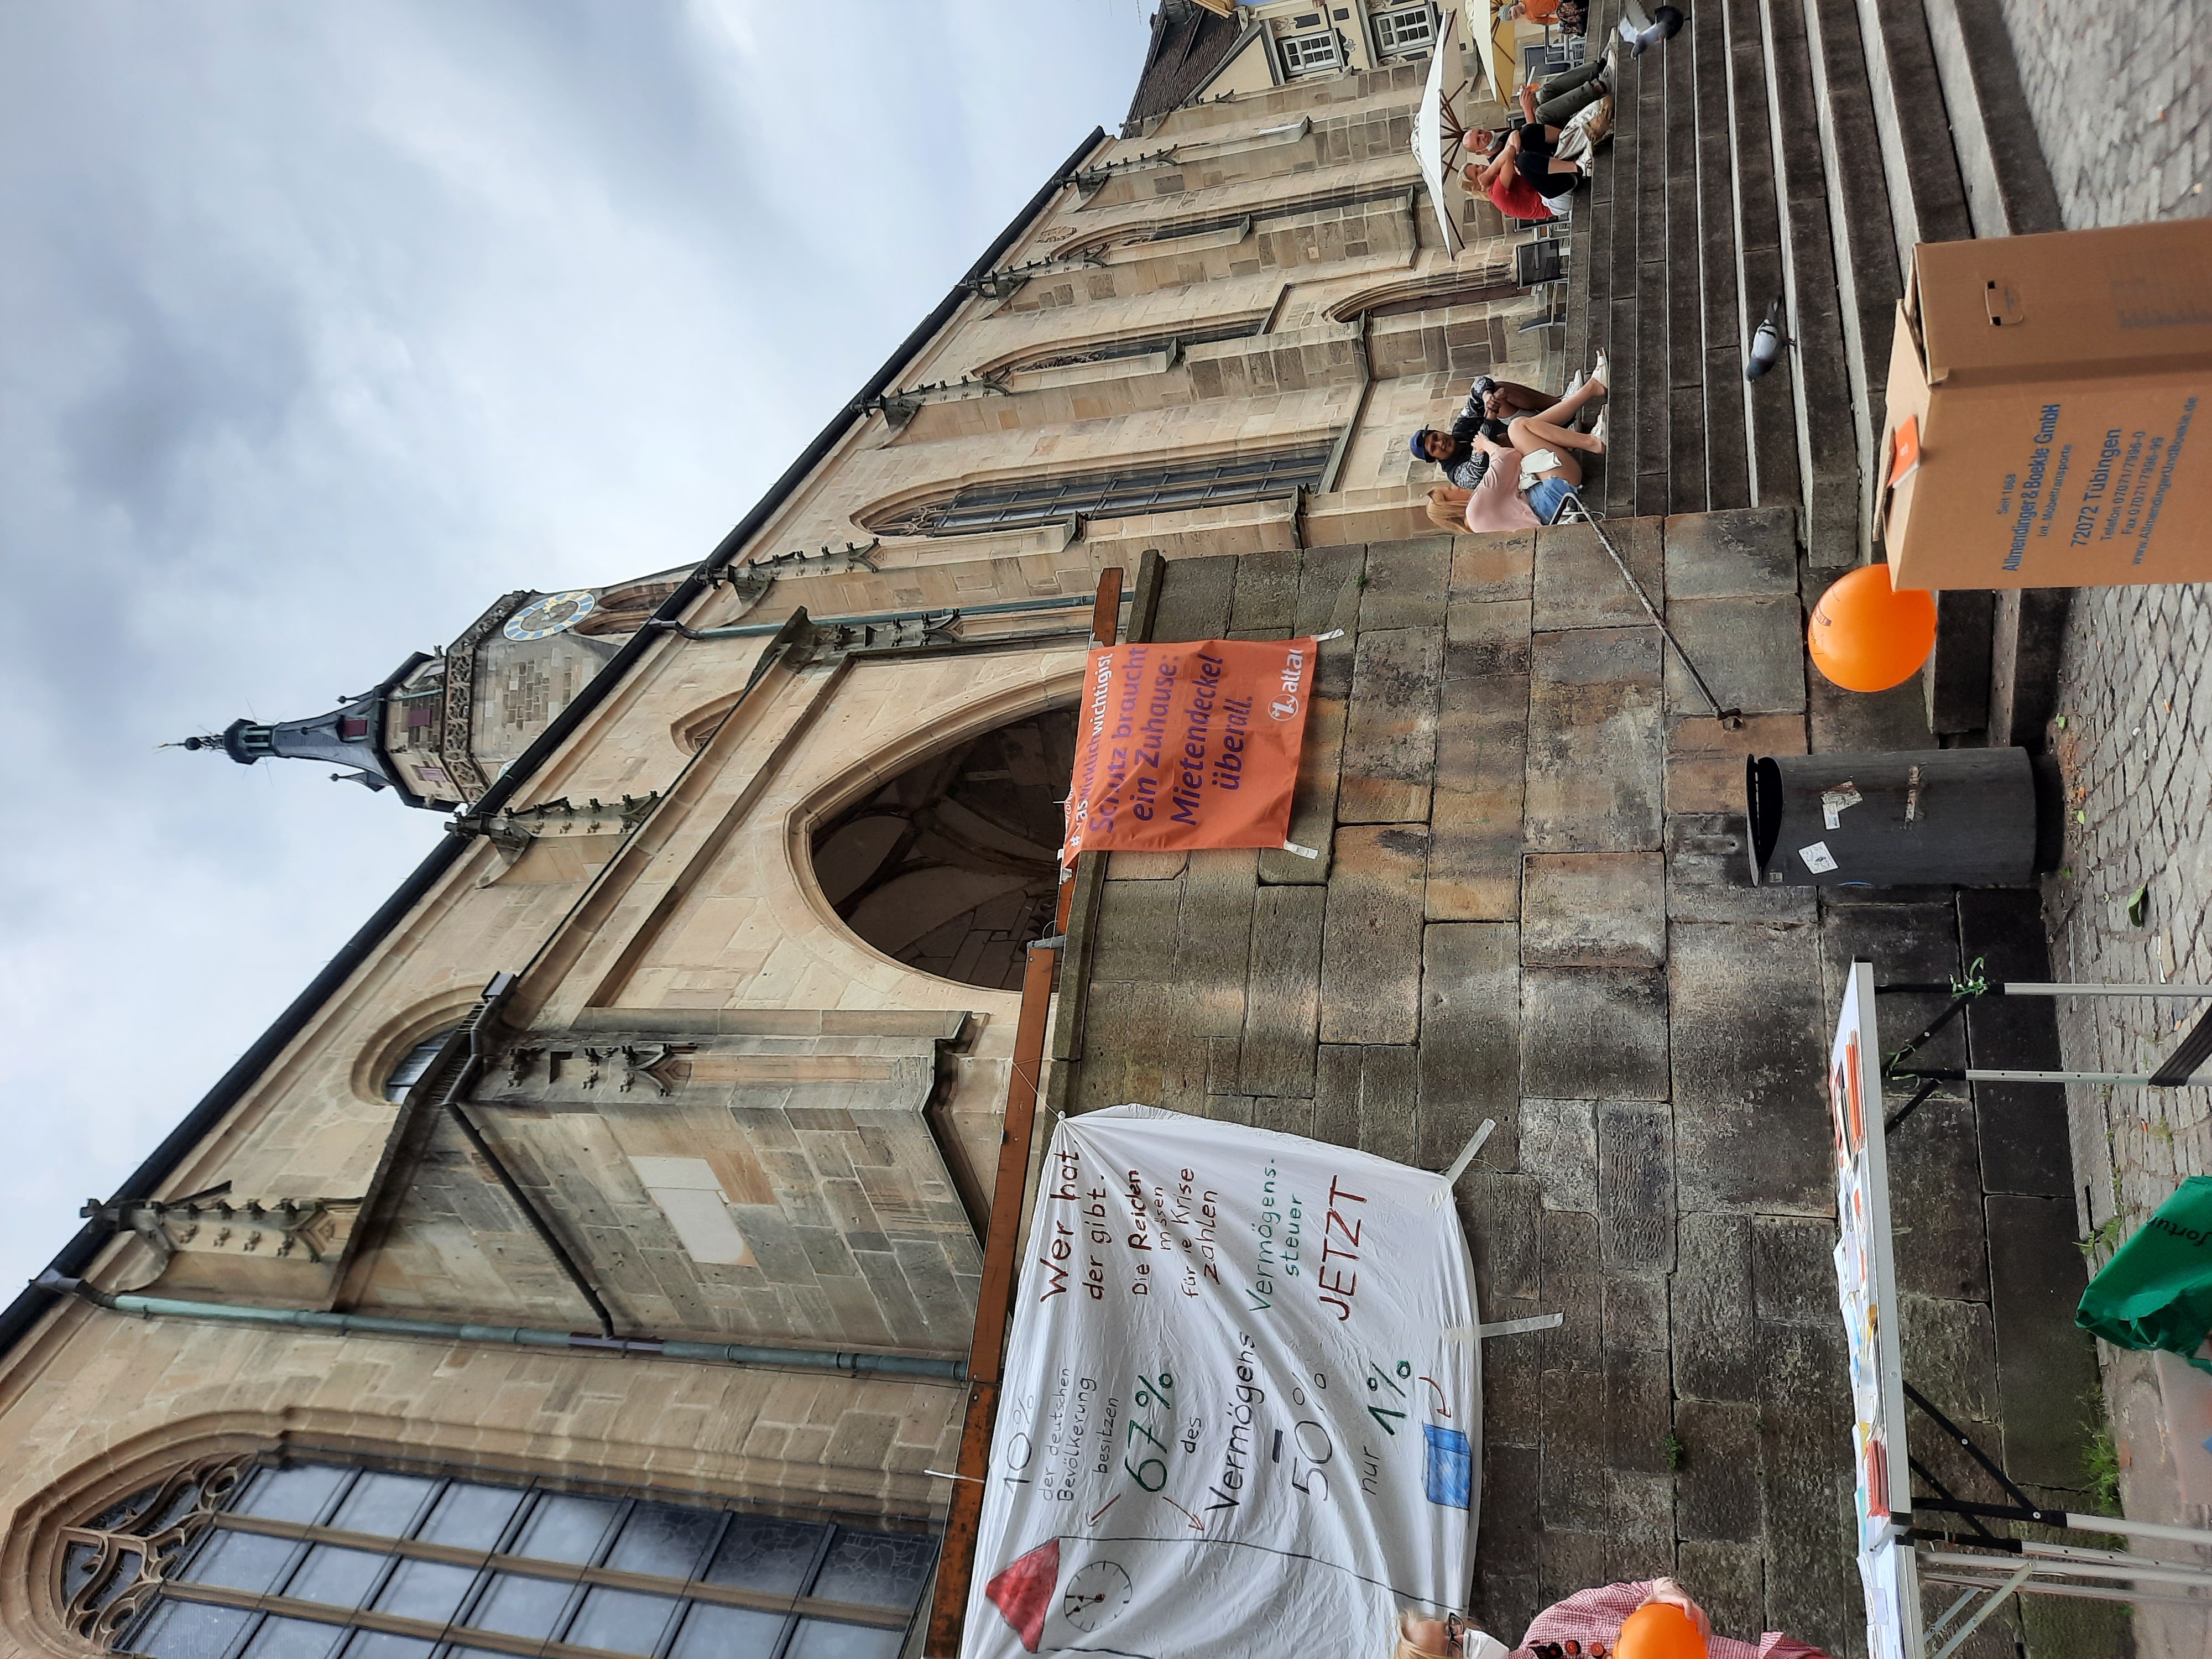 Im Bild ist ein Infostand von Attac in Tübingen, im Vordergrund ist ein Umzugskarton, der für das Vermögen der ärmeren Bevölkerungshälfte steht und im Hintergrund der Kirchturm der Marktkirche, die 67m Hoch ist und damit das Vermögen der reichsten 10% als Vergleich darstellt.